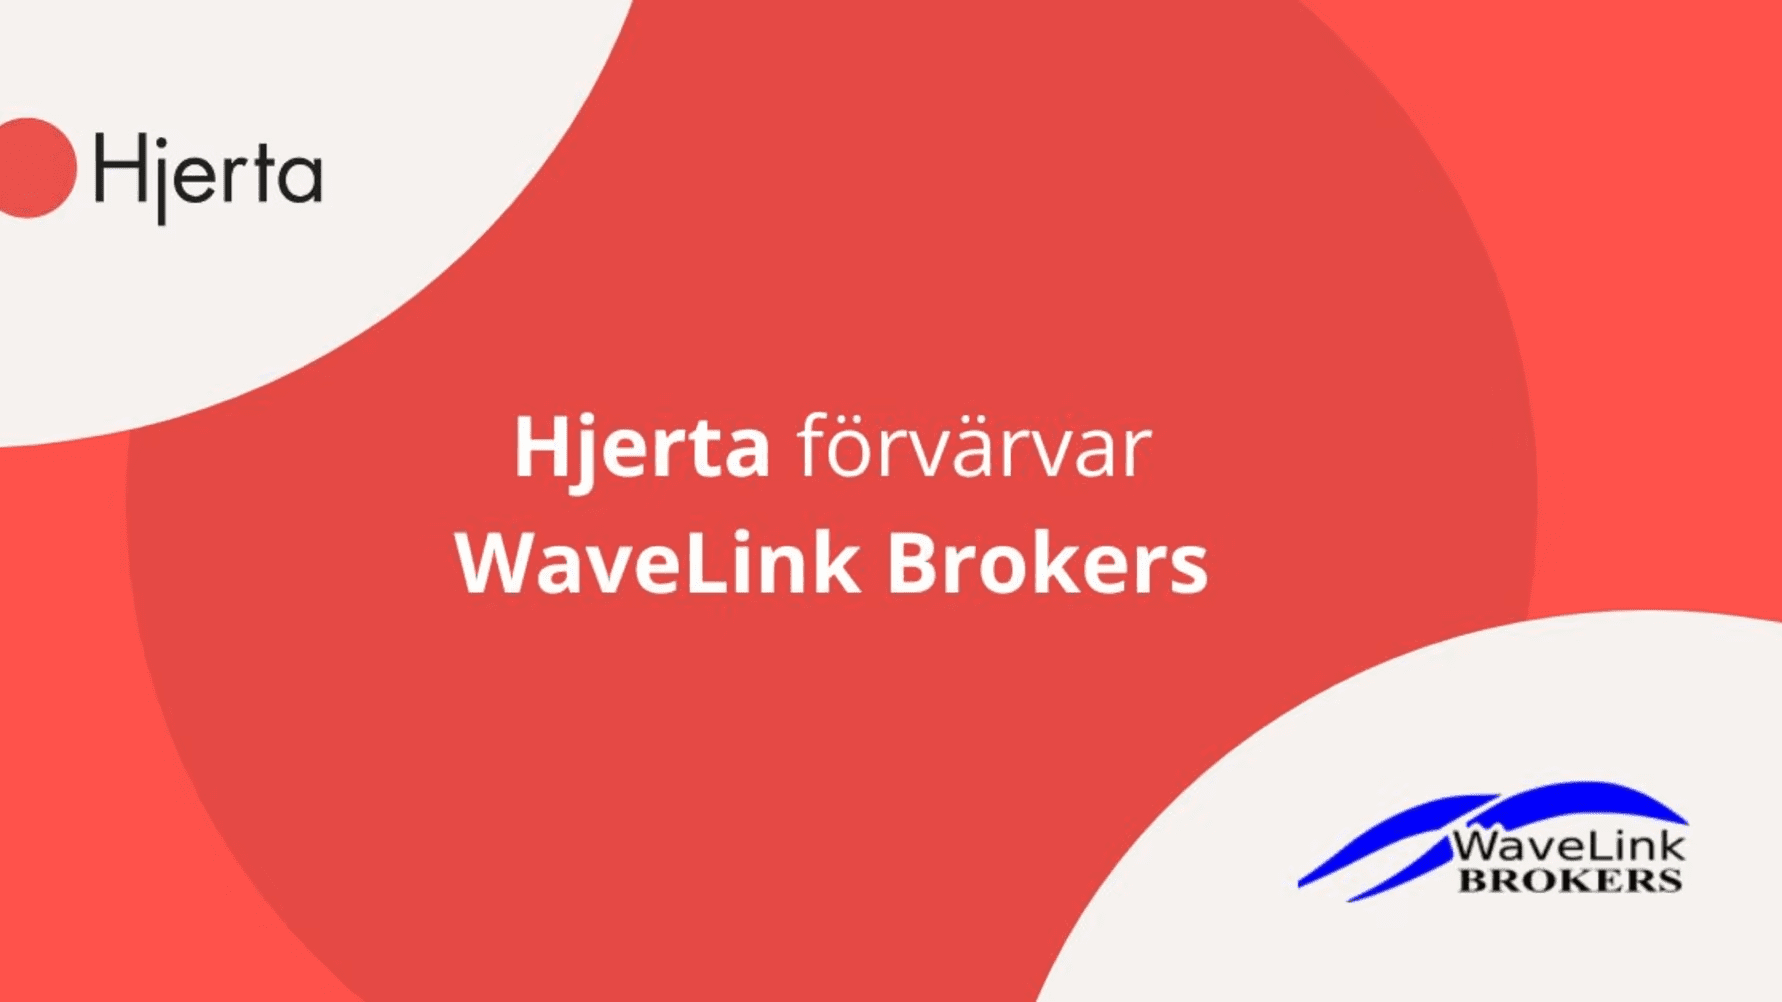 Hjerta förvärvar WaveLink Brokers